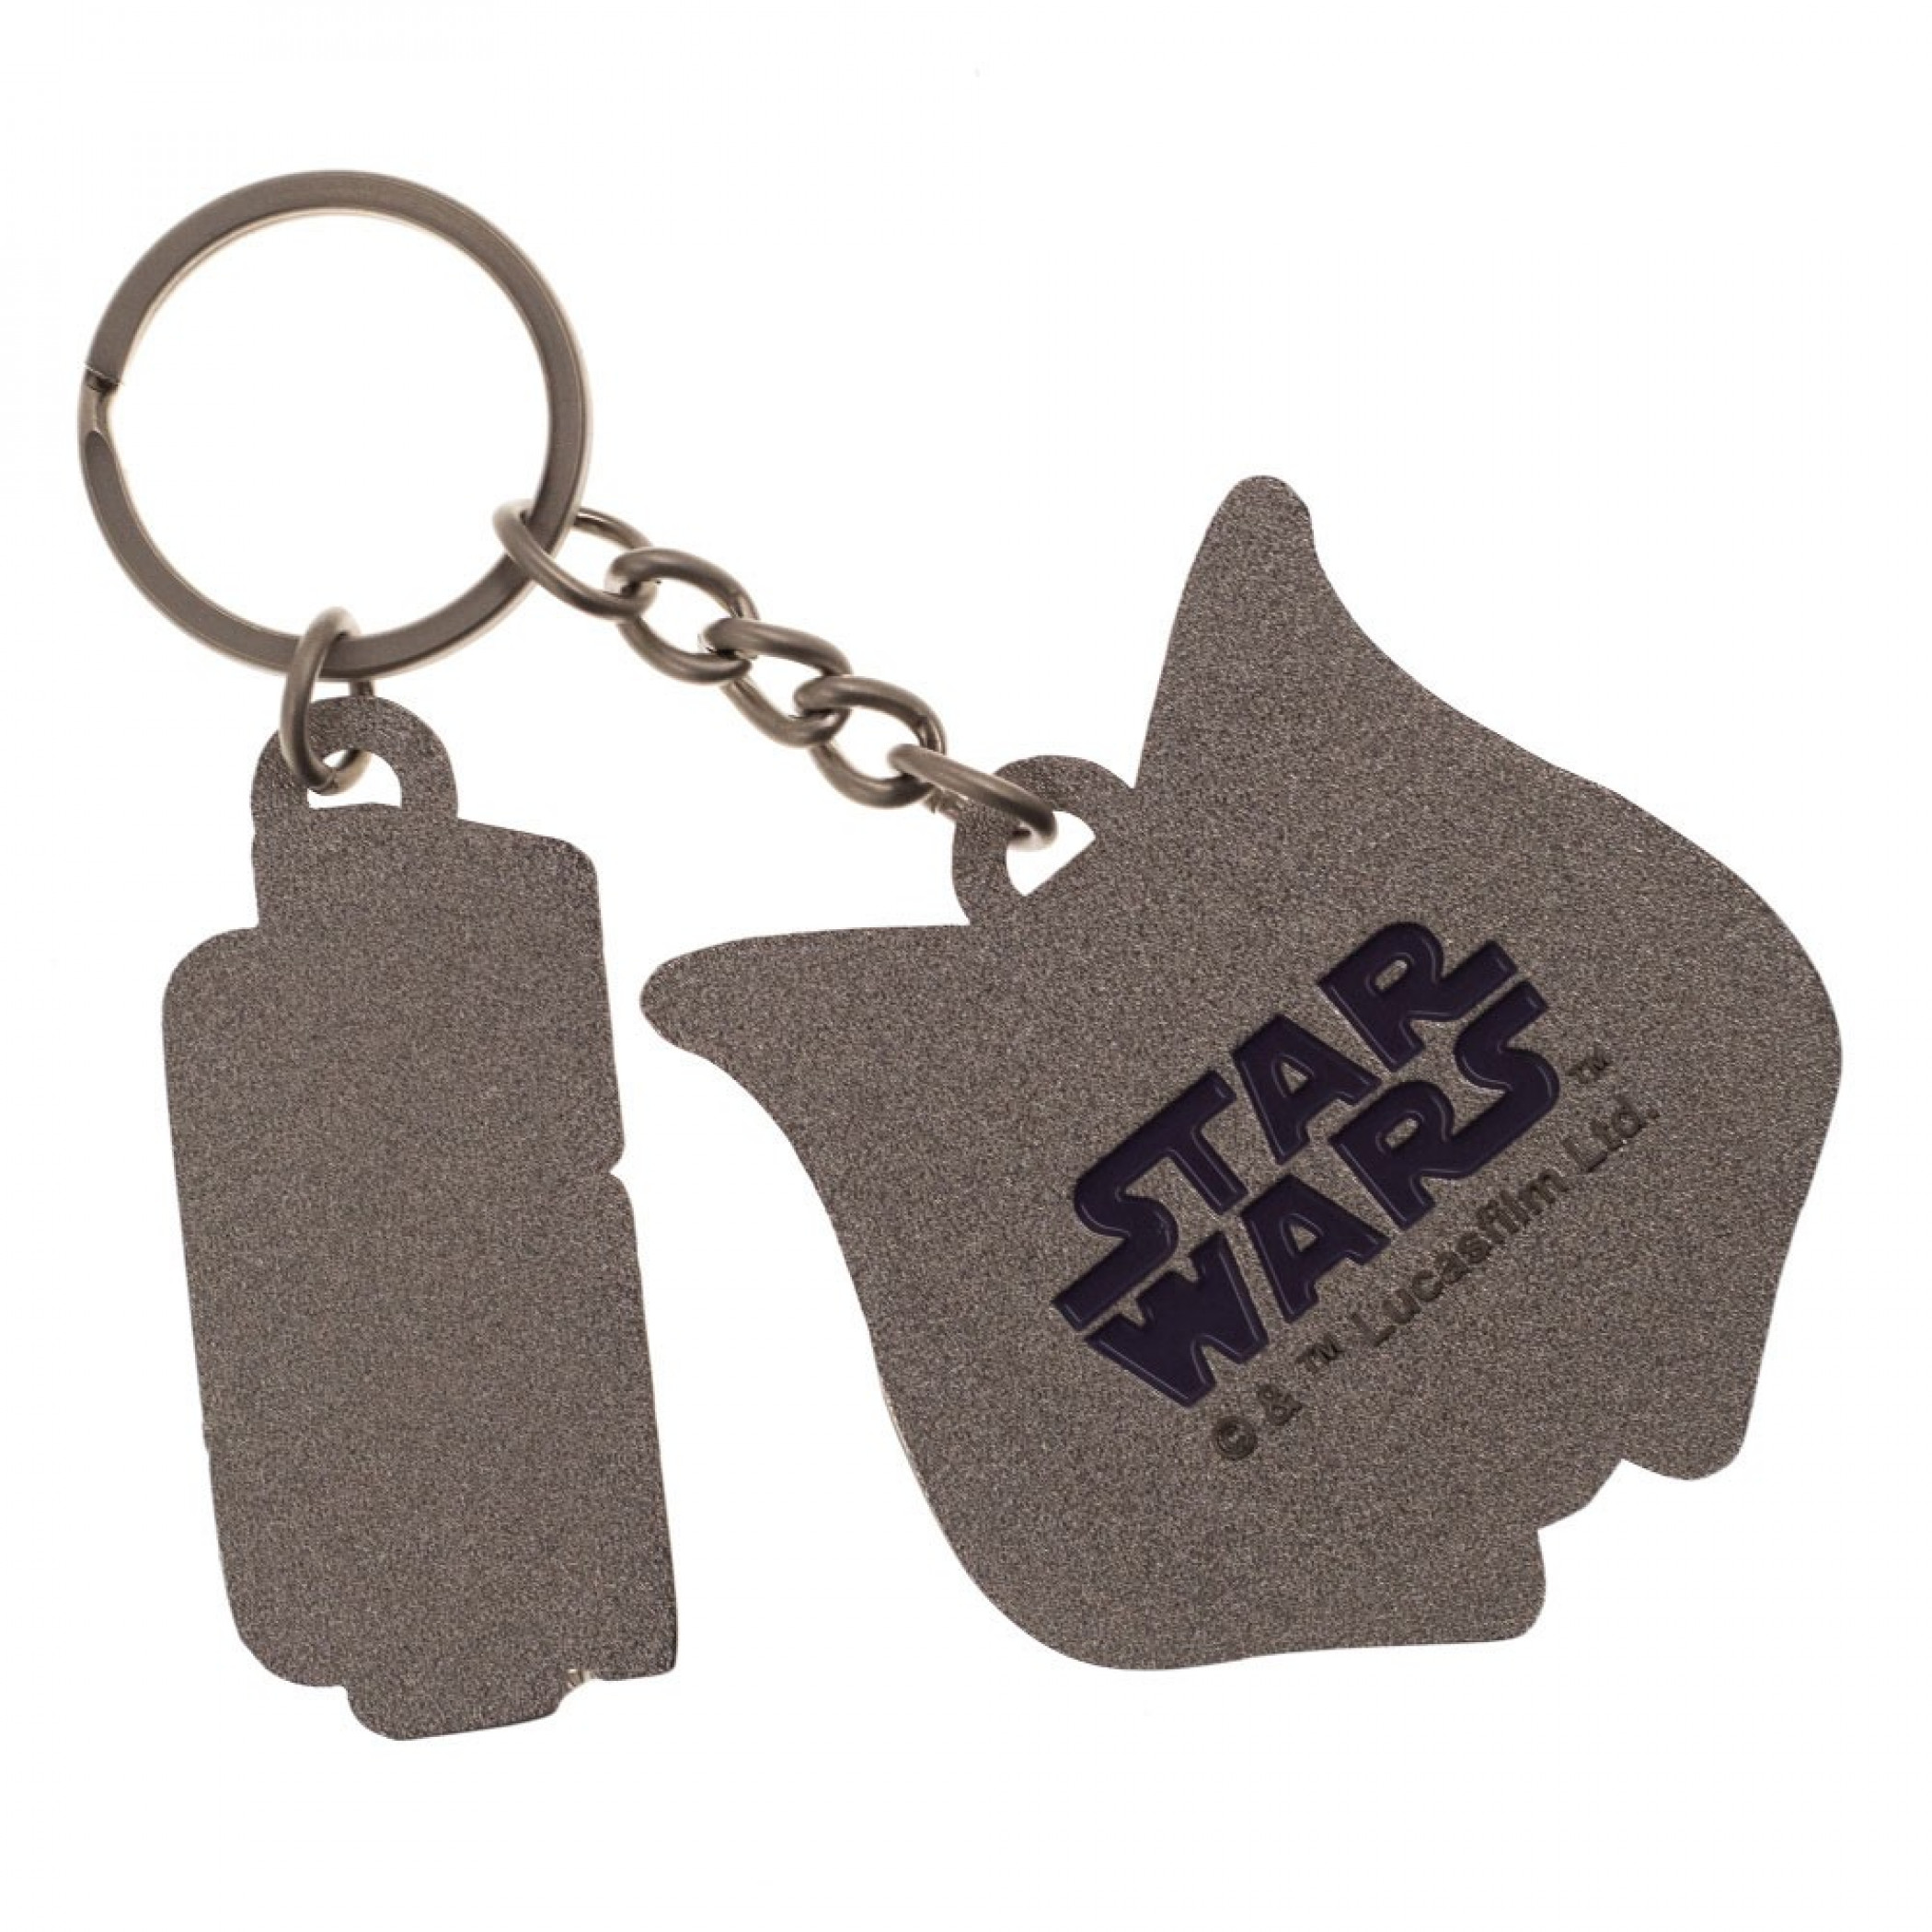 Star Wars Ahsoka Tano Keychain with Metal Charm